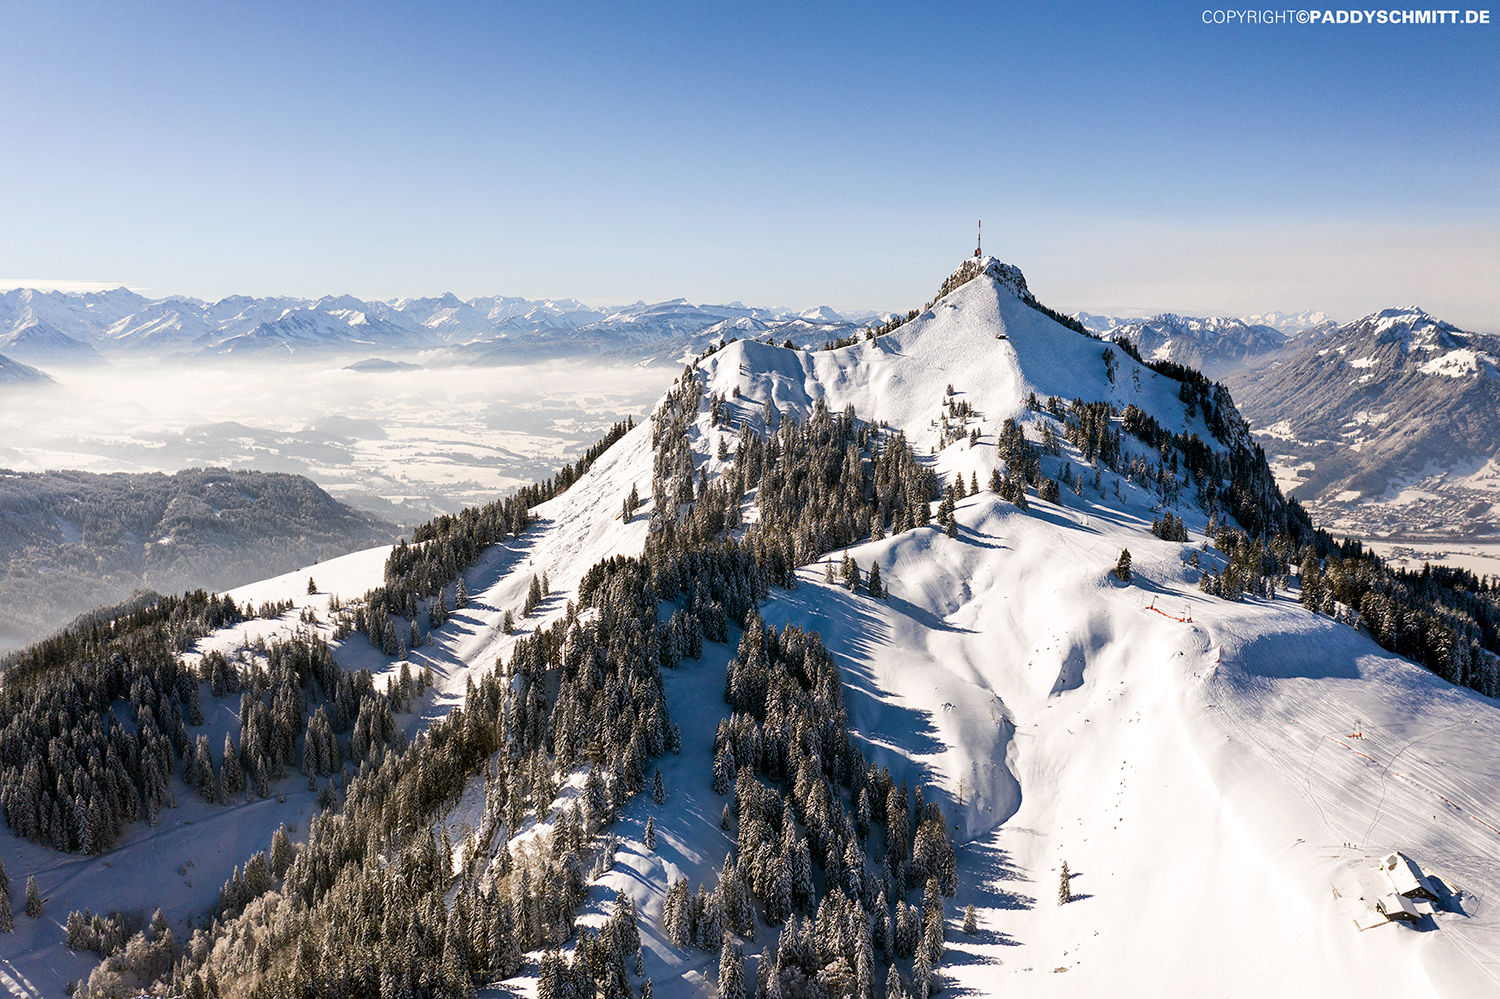 Der verschneite Berg Grünten aus der Ferne mit dem Bergpanorama der Allgaeuer Alpen im Hintergrund.